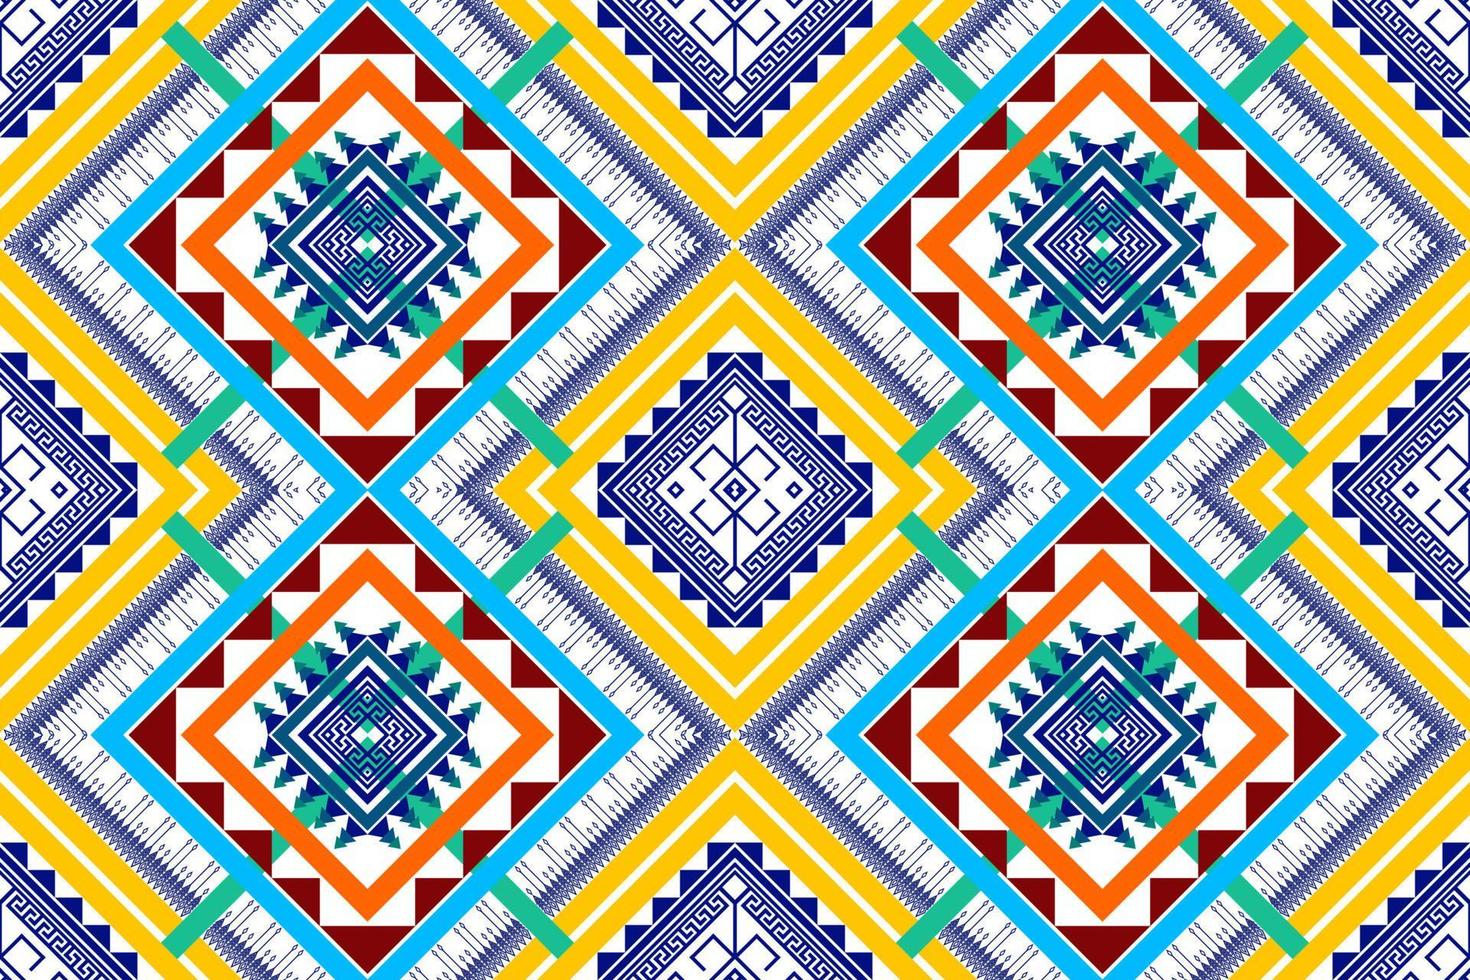 design de padrão étnico geométrico. tecido asteca tapete mandala ornamento chevron têxtil decoração papel de parede. fundo de bordado tradicional indiano africano de peru tribal vetor